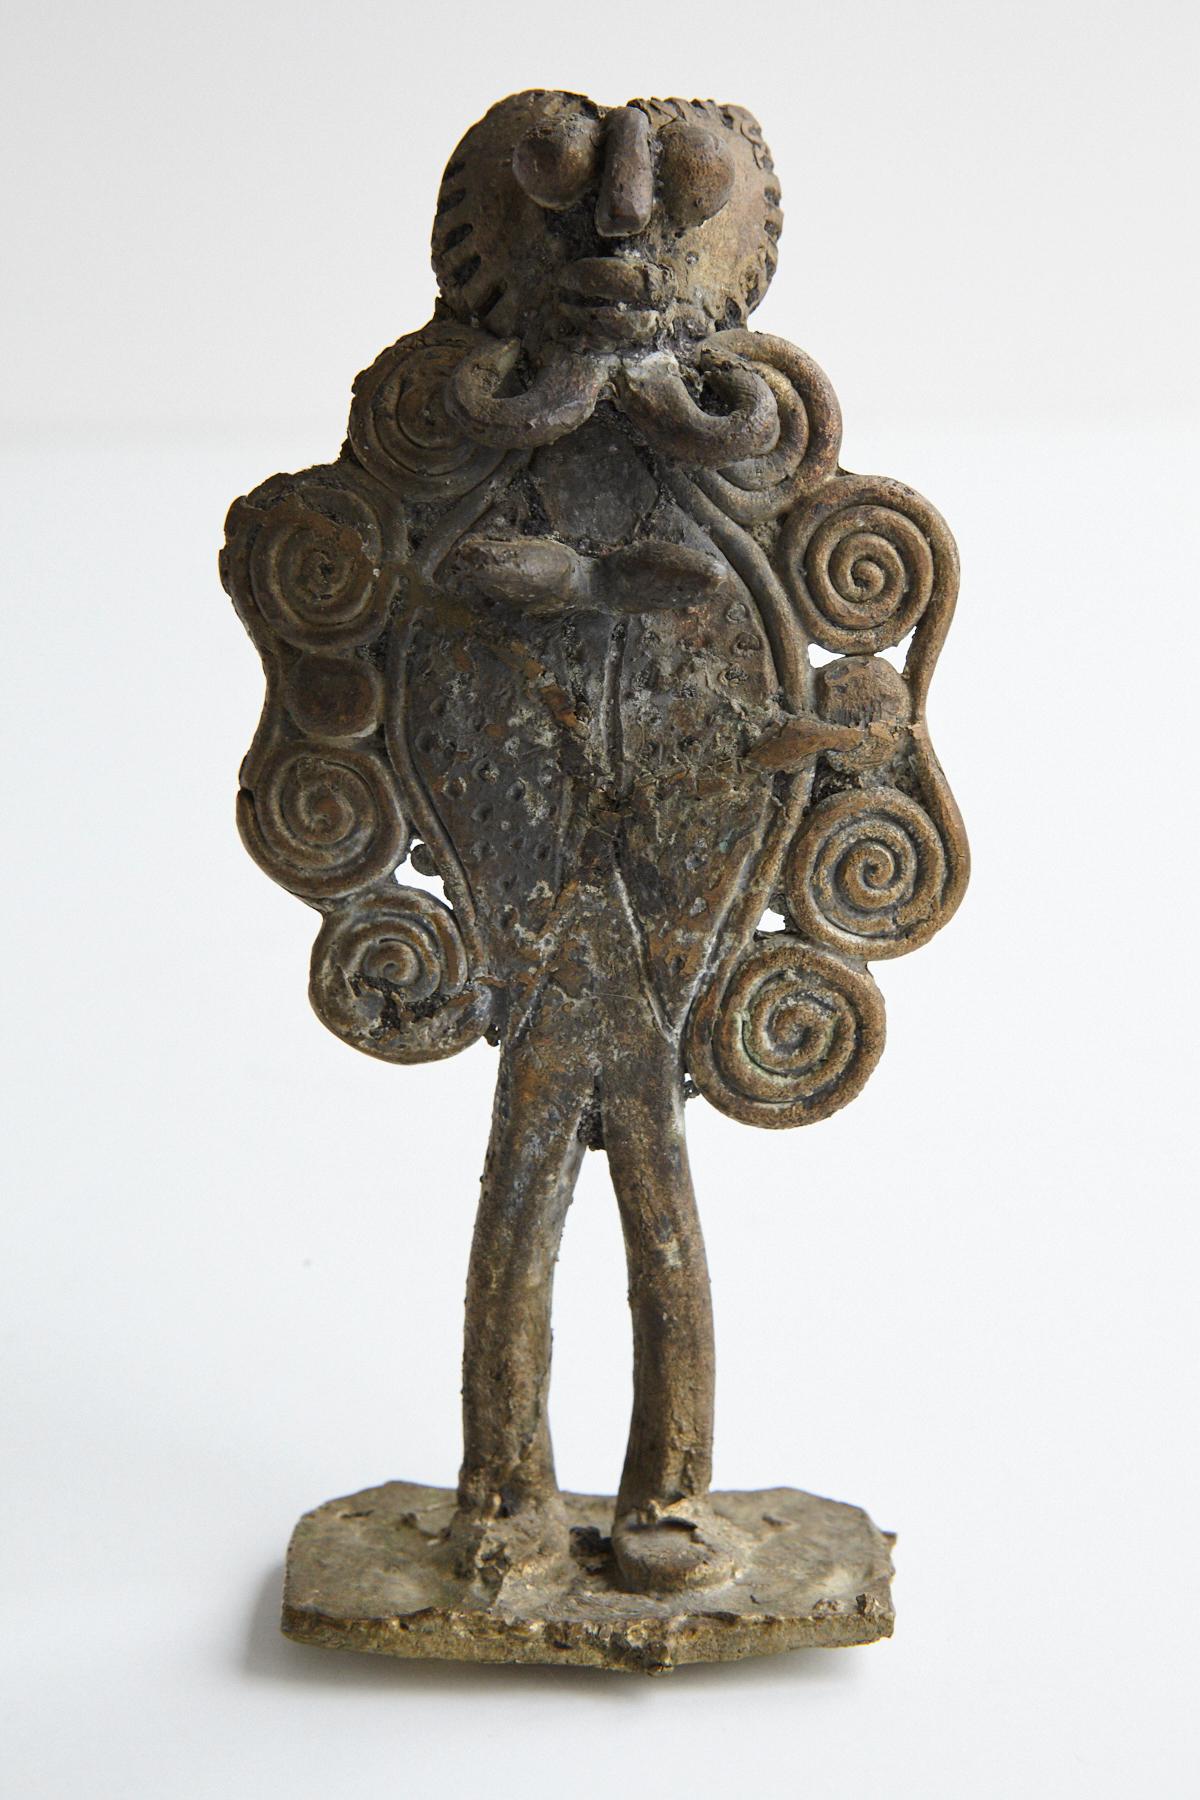 Figurine Akan Ashanti en bronze coulé. Le peuple Ashanti ou Asante du Ghana a une riche tradition de fabrication de pièces en bronze pour commémorer des personnages importants de leur culture ou des personnes de leur tribu ou de leur famille. 
Les